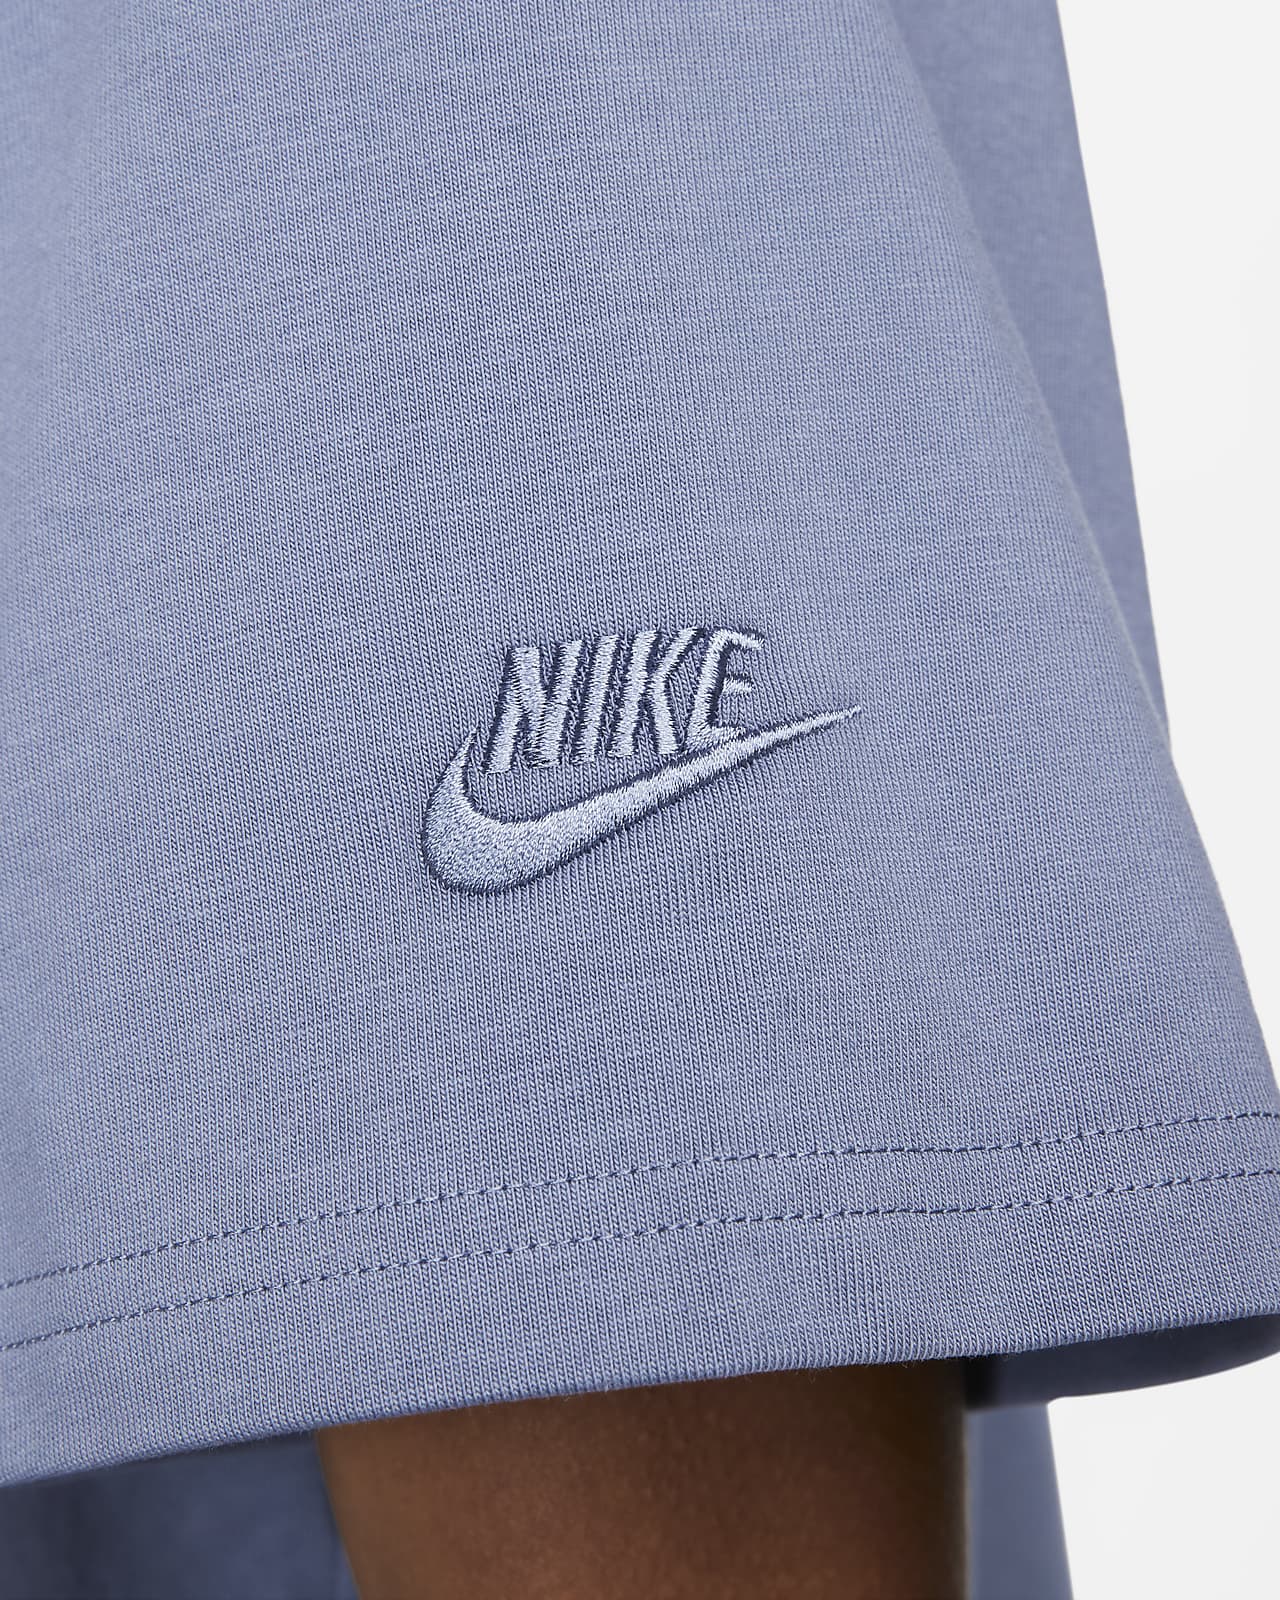 Nike Sportswear Tech Pack Men's Engineered Knit Short-Sleeve Sweater. Nike .com